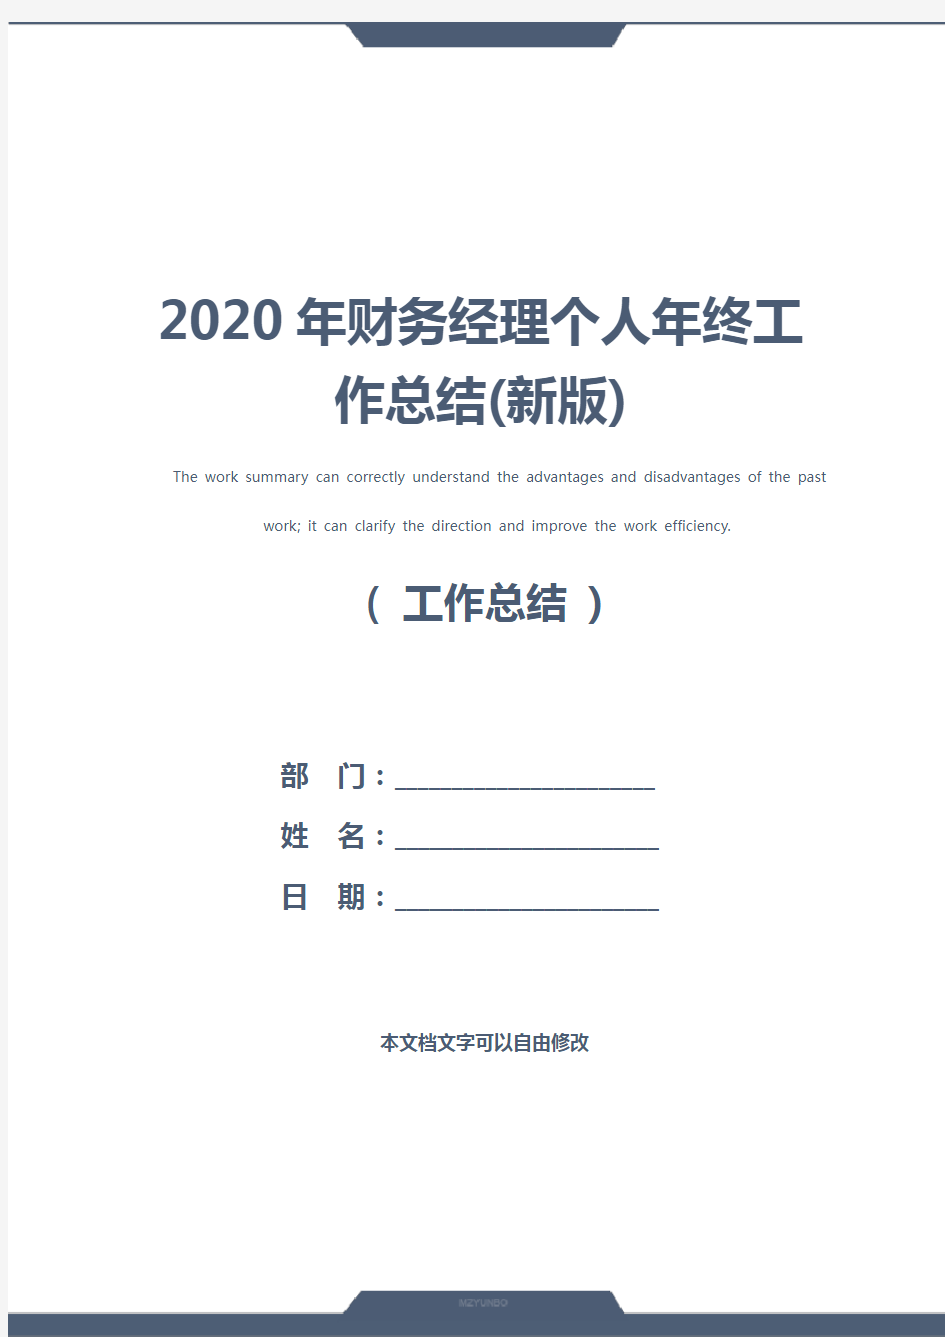 2020年财务经理个人年终工作总结(新版)